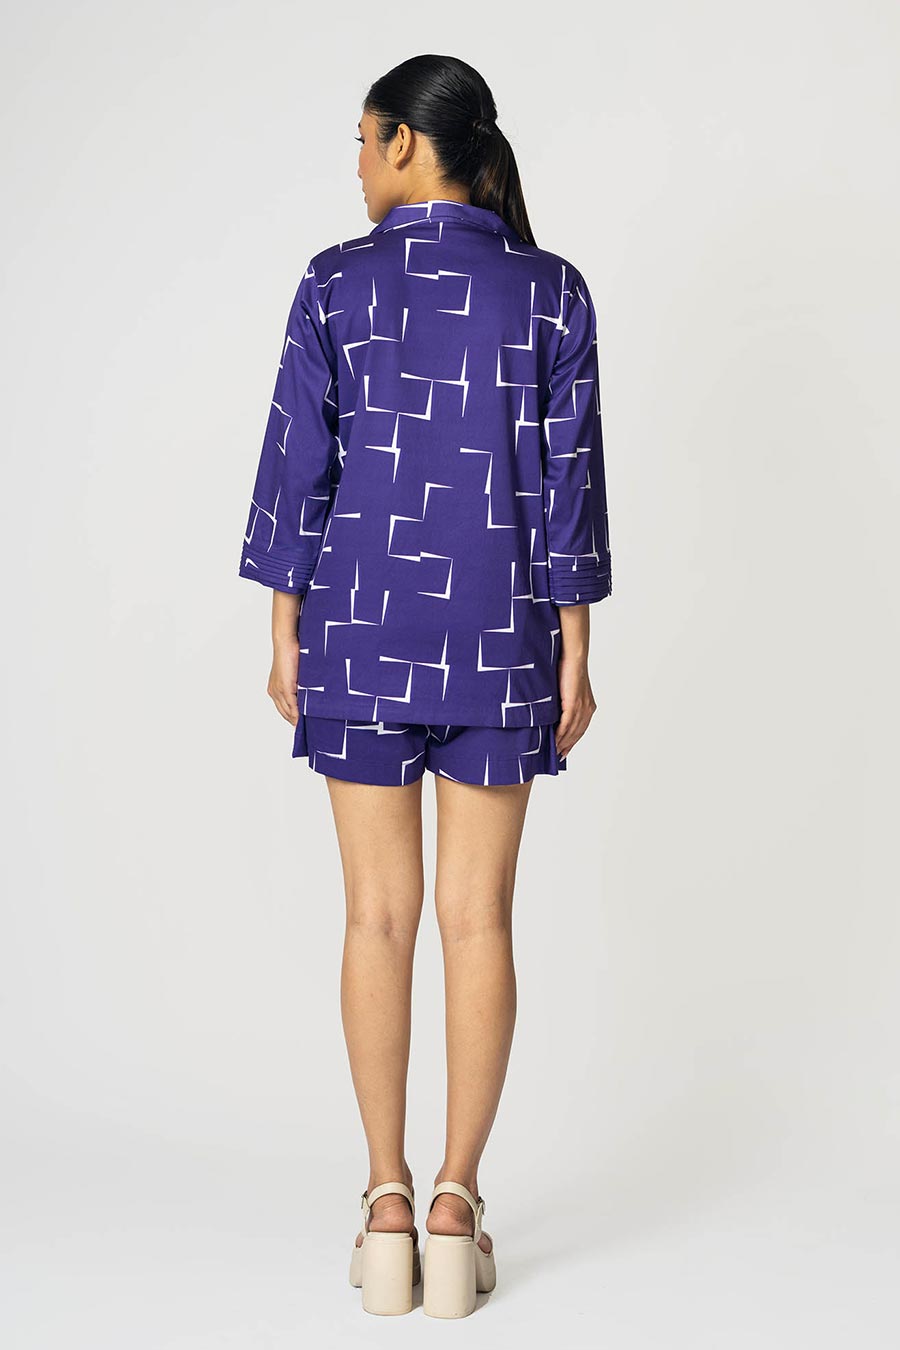 Purple Brick Printed Shirt & Shorts Co-Ord Set